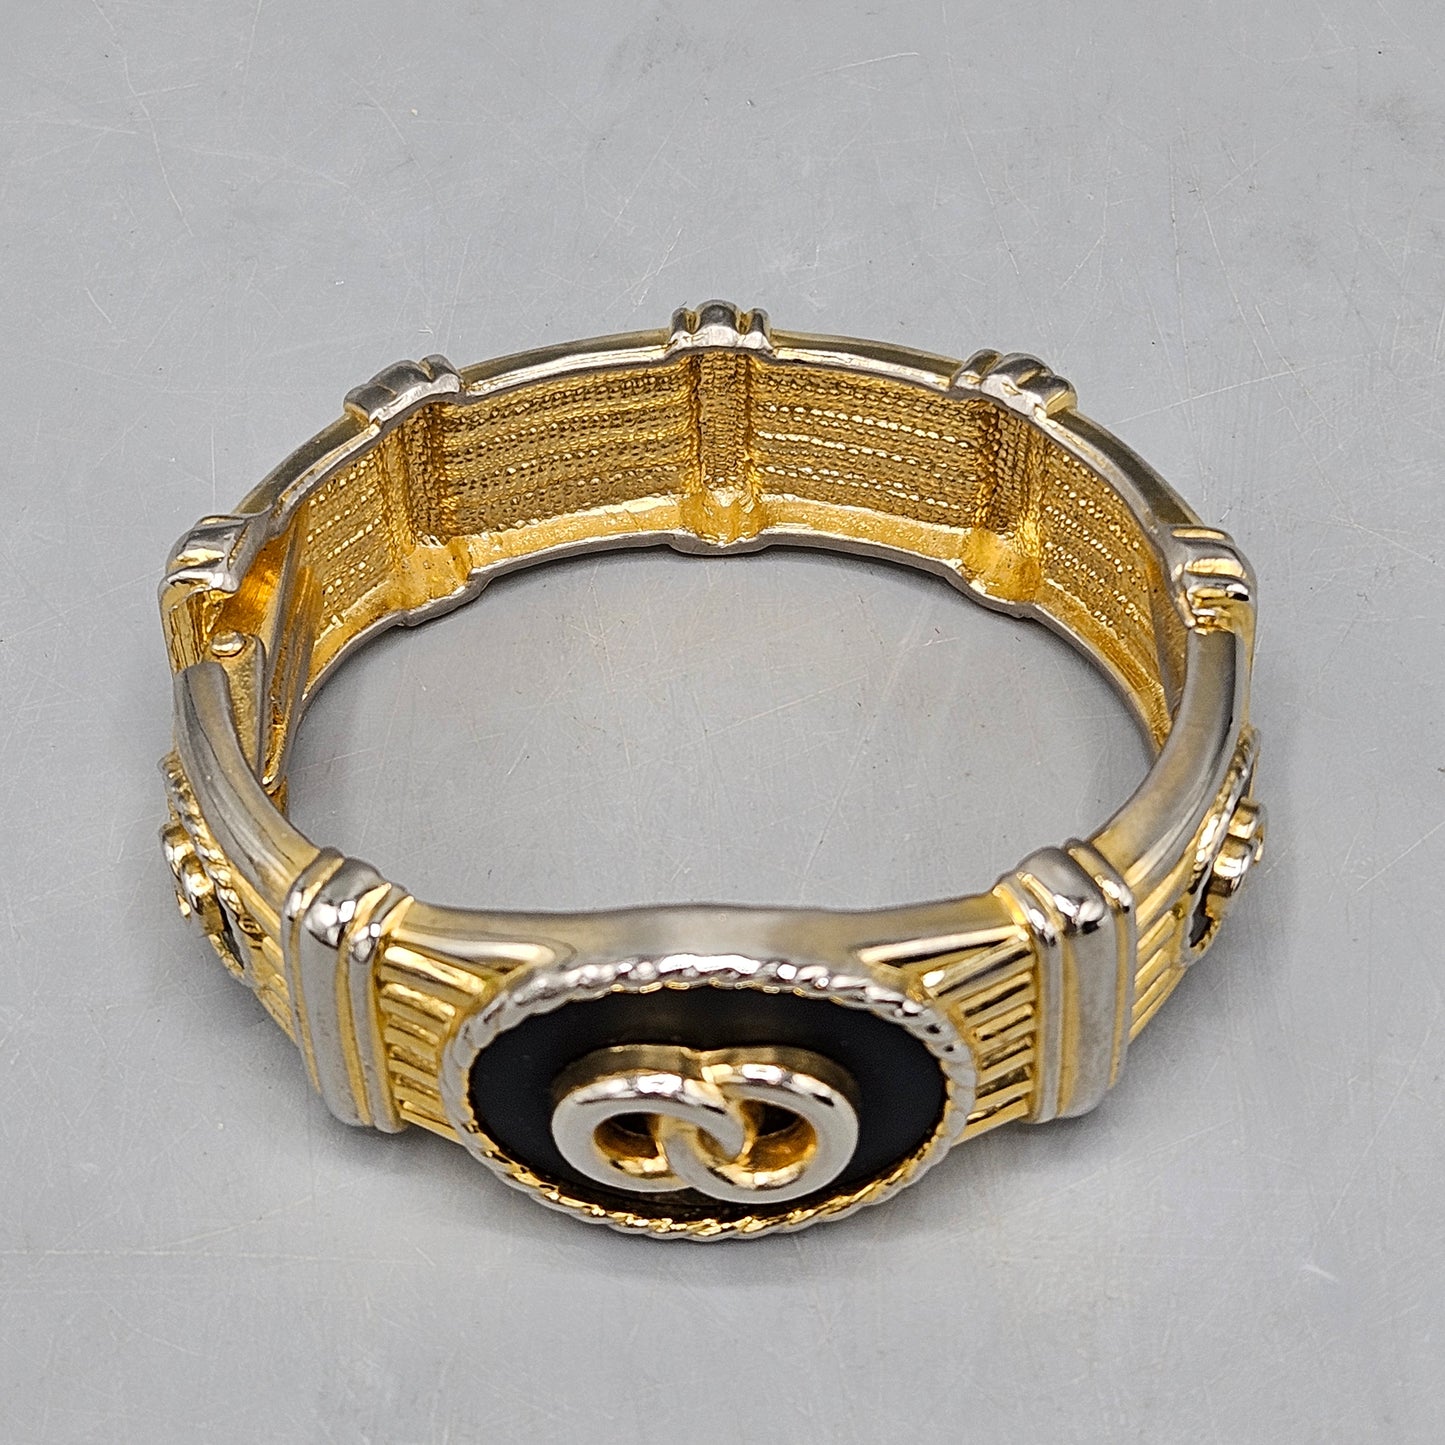 Vintage Hinged Bangle Bracelet with Double Circle Design & Raised Gold Tone